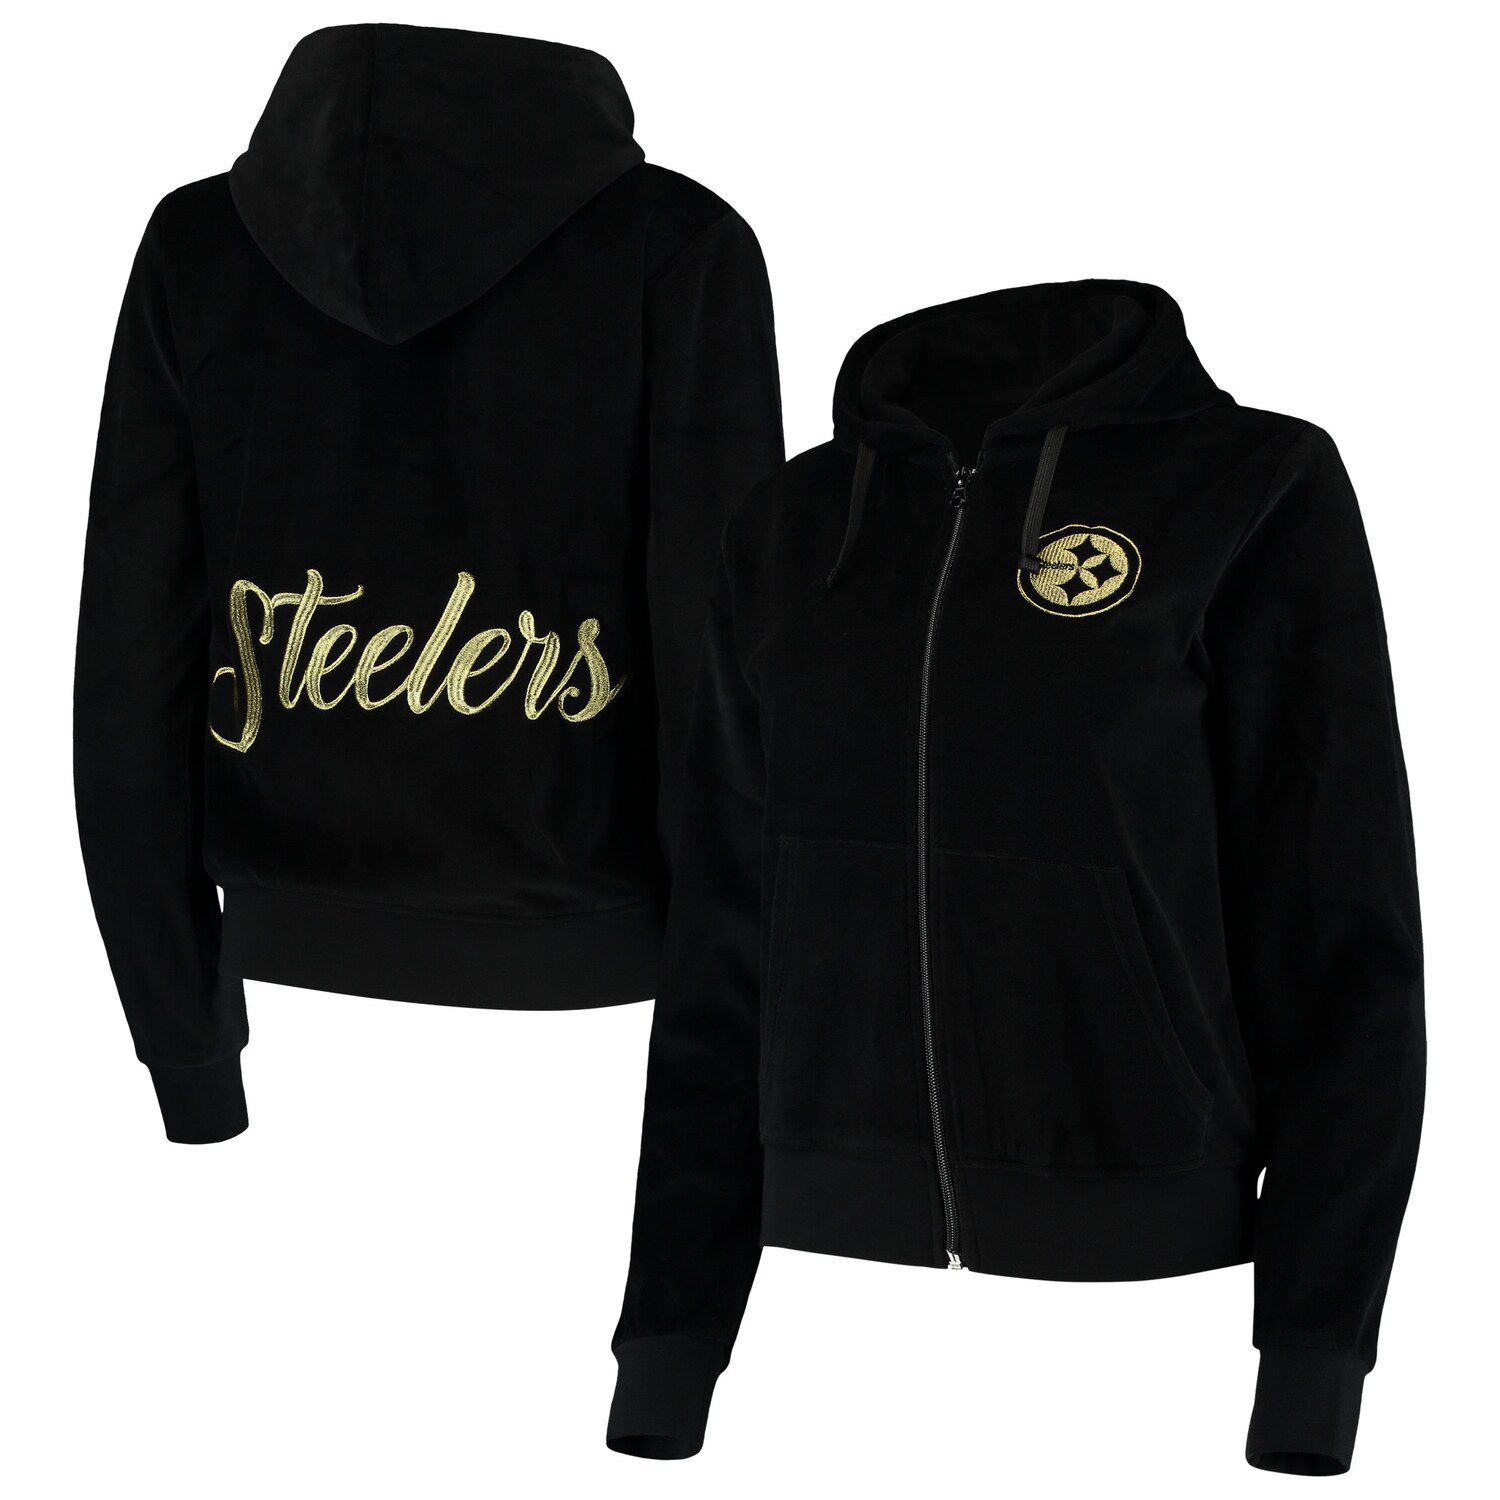 steelers zip hoodie